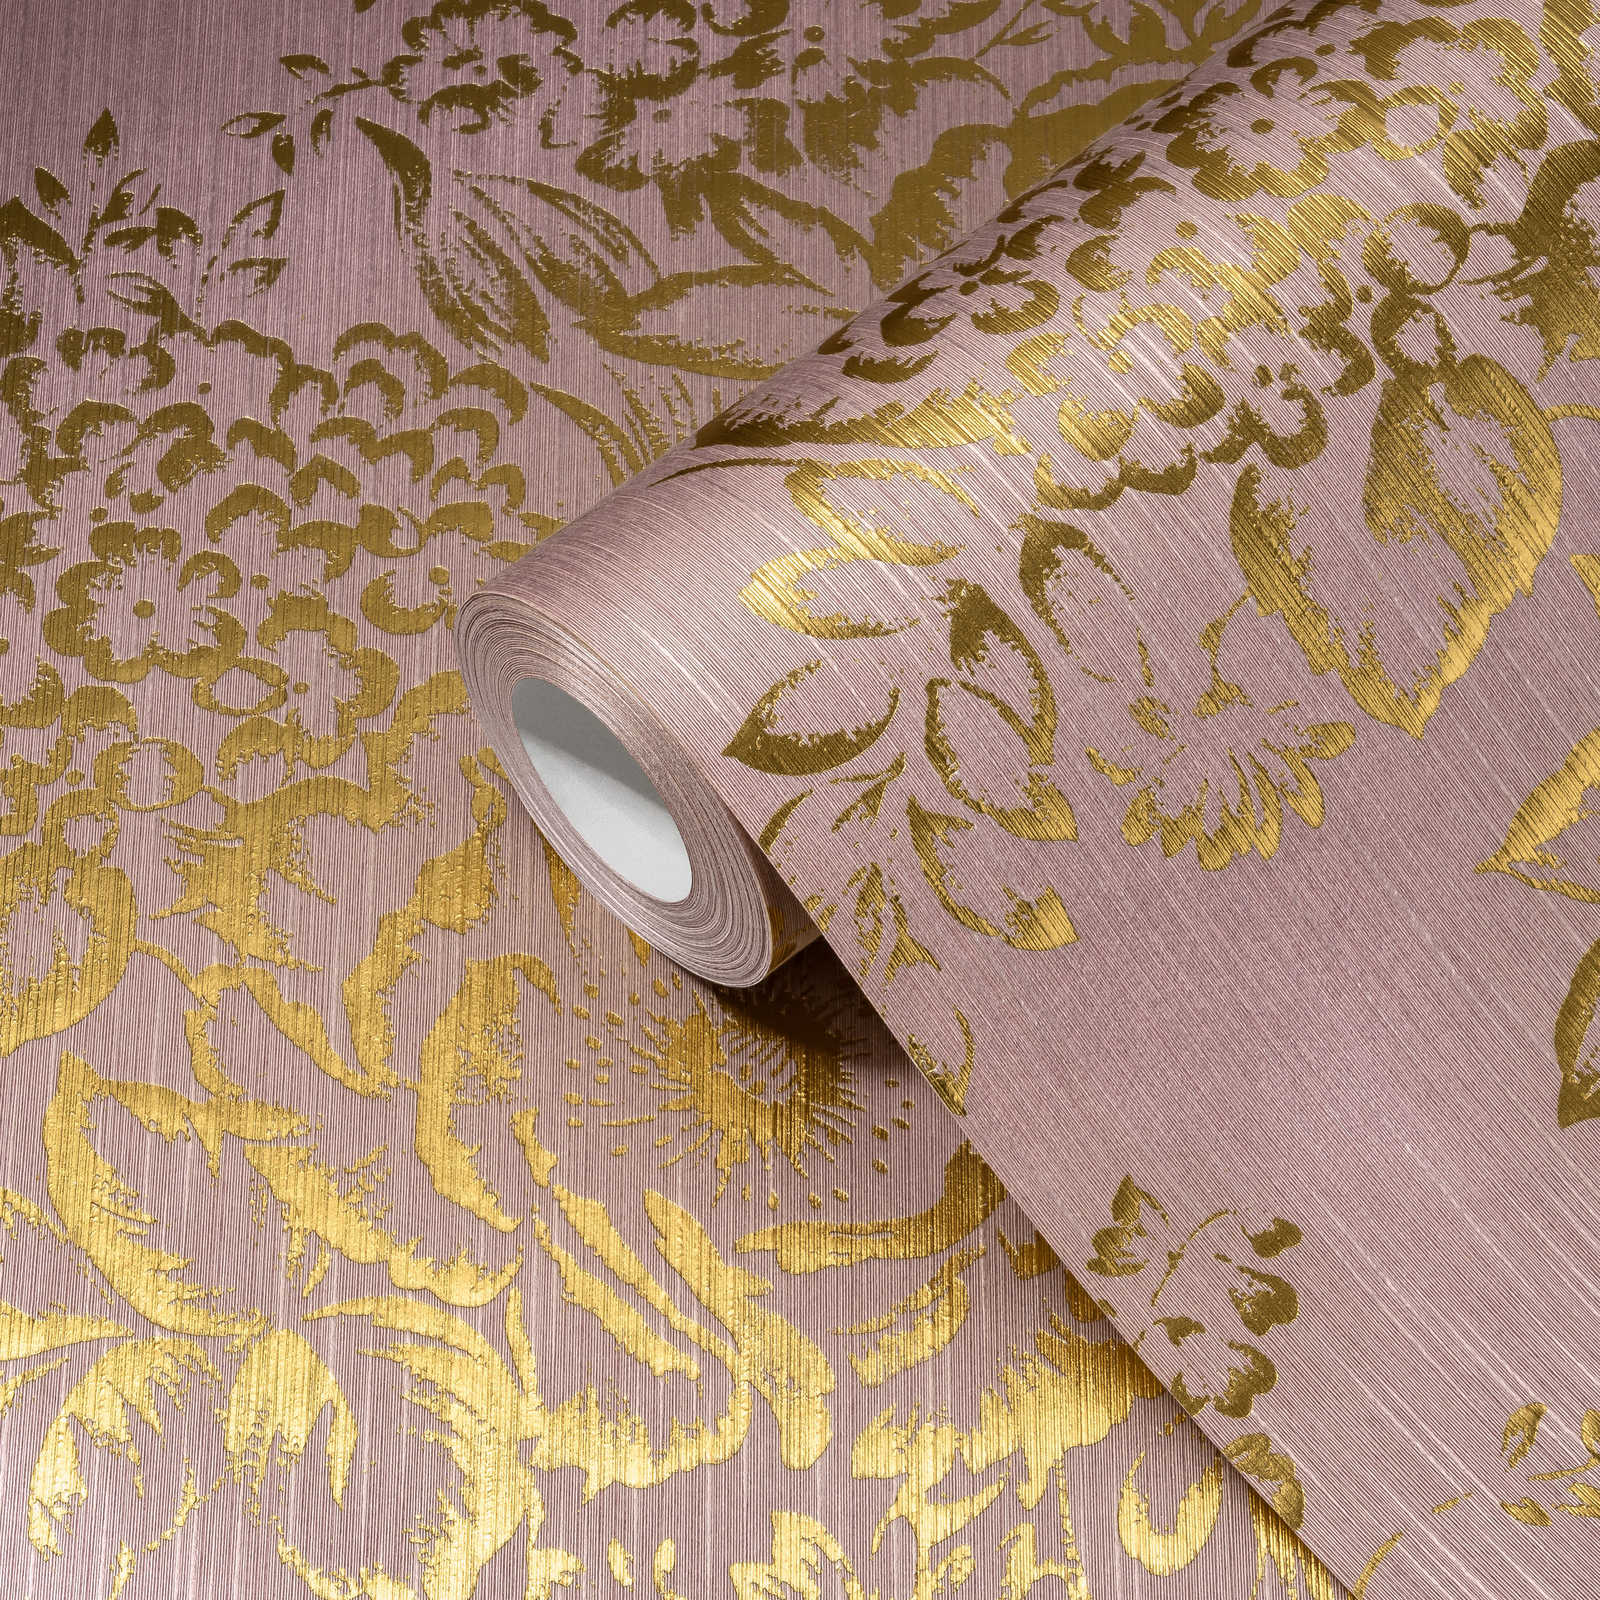             Papel pintado texturizado con motivos florales dorados - oro, rosa
        